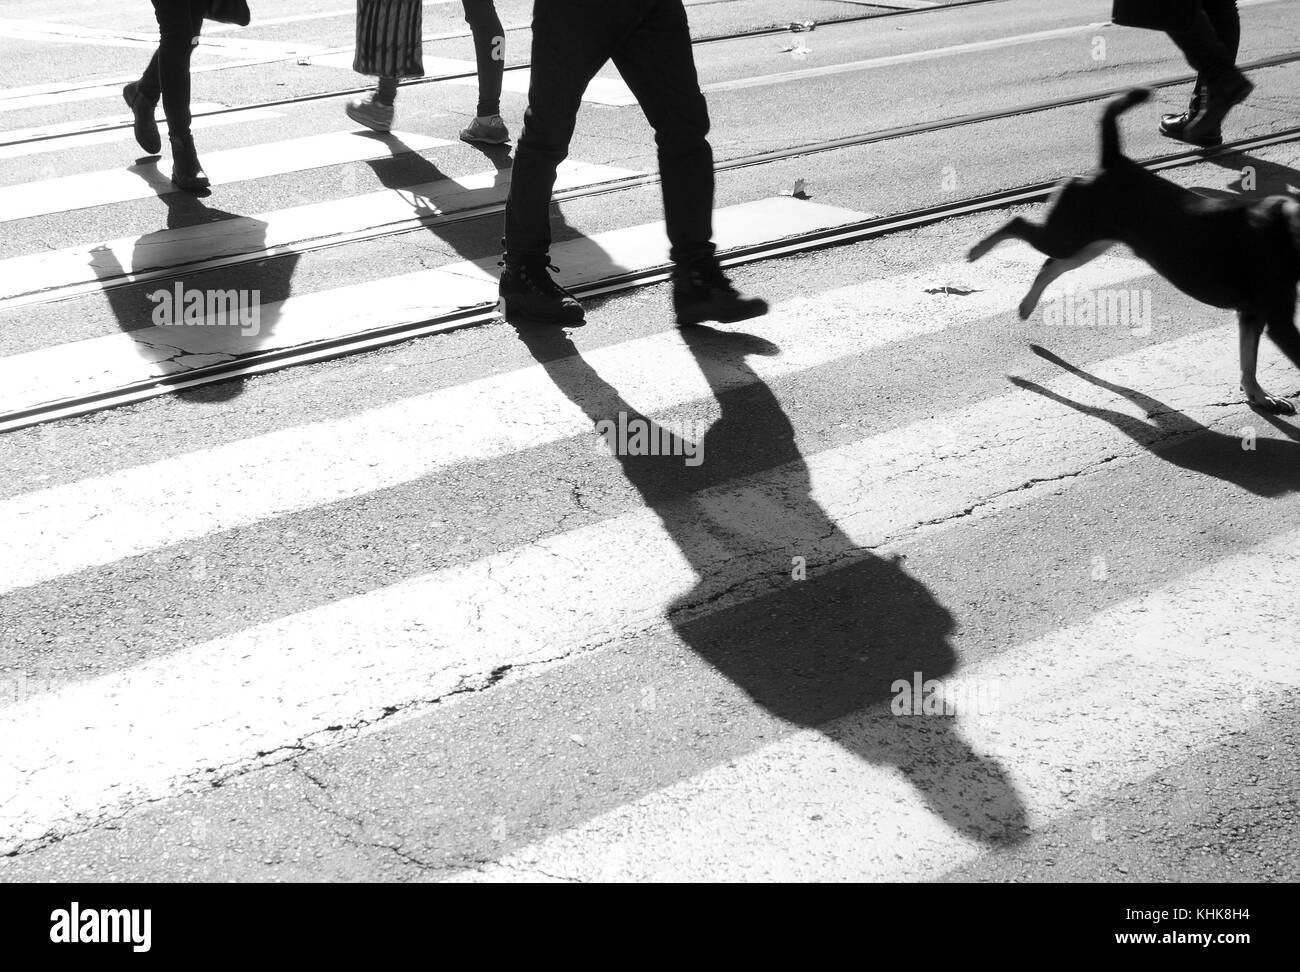 Strisce pedonali con ombre e sagome di persone a piedi e un cane in motion blur attraversando la strada in bianco e nero Foto Stock